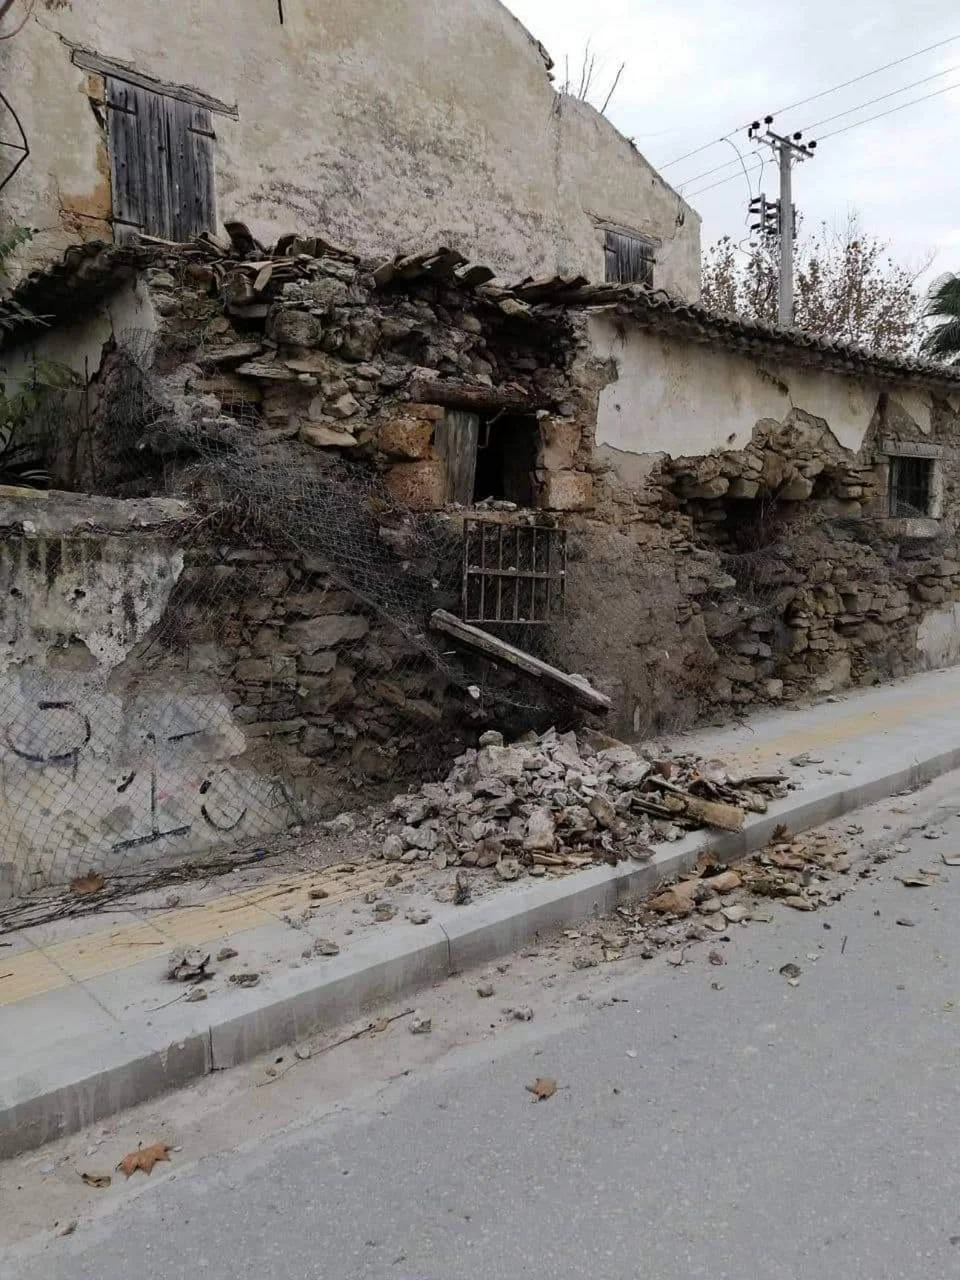 اخبار اليونان زاكينثوس - زلزال بقوة 3.7 ريختر يضرب زاكينثوس وكيليني ويتسبب في أضرار مادية